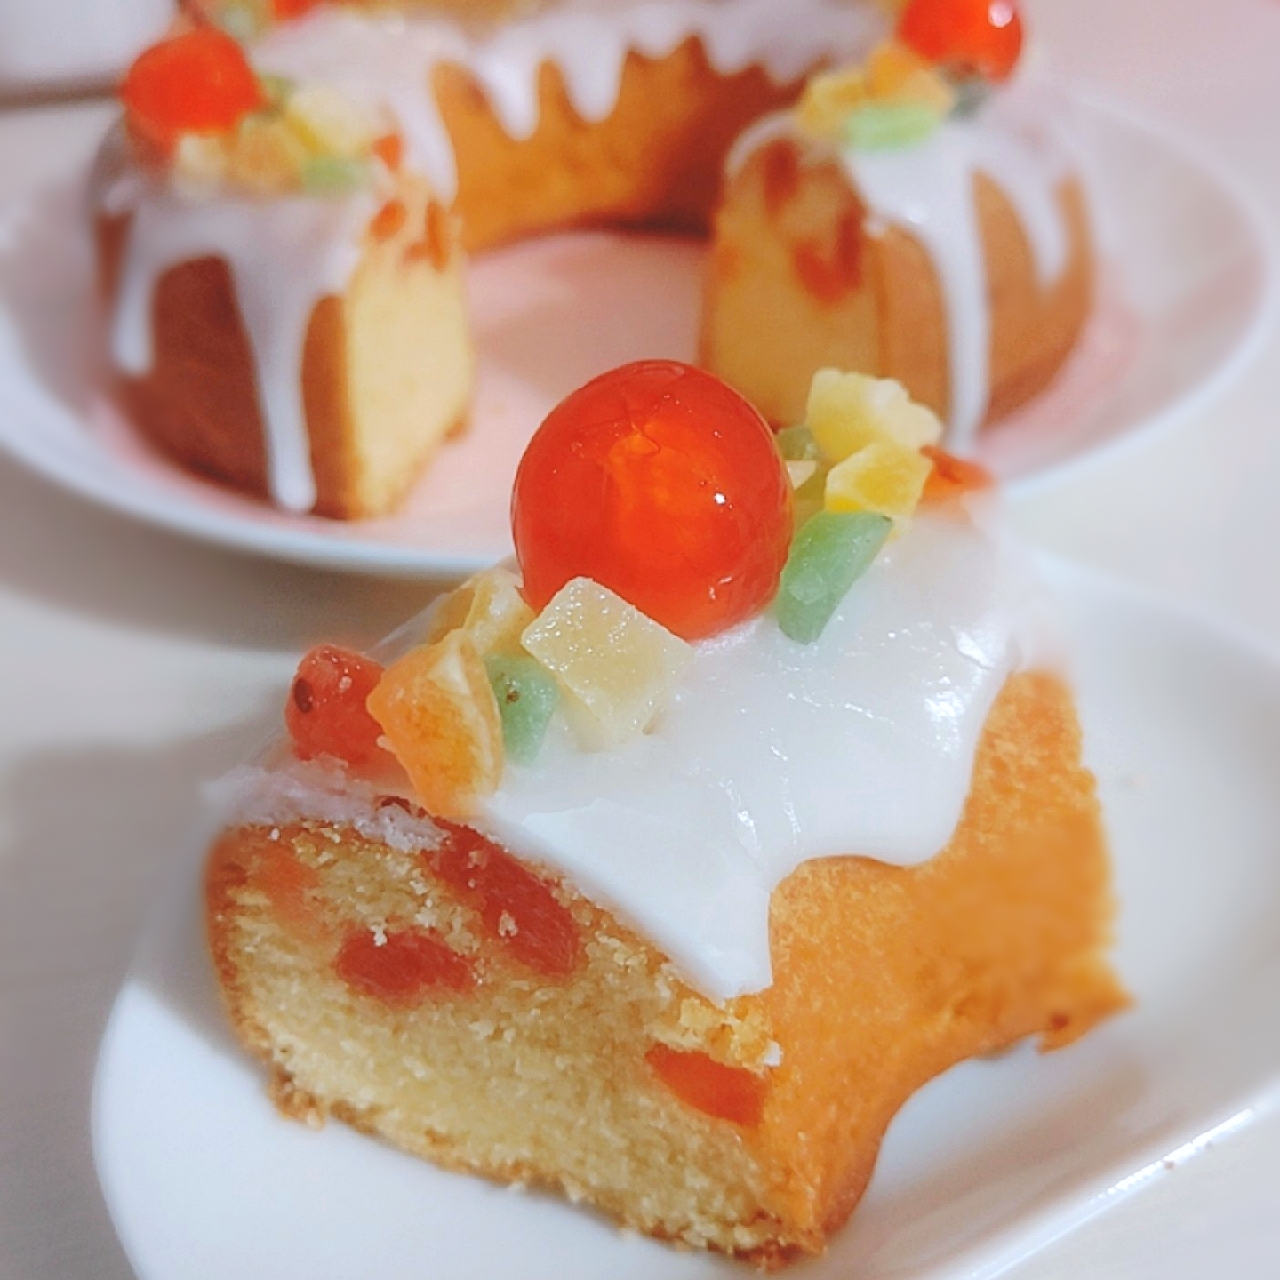 ドレンチェリーのケーキ/砂糖味屋キッチン | SnapDish[スナップディッシュ] (ID:Cnm5qa)